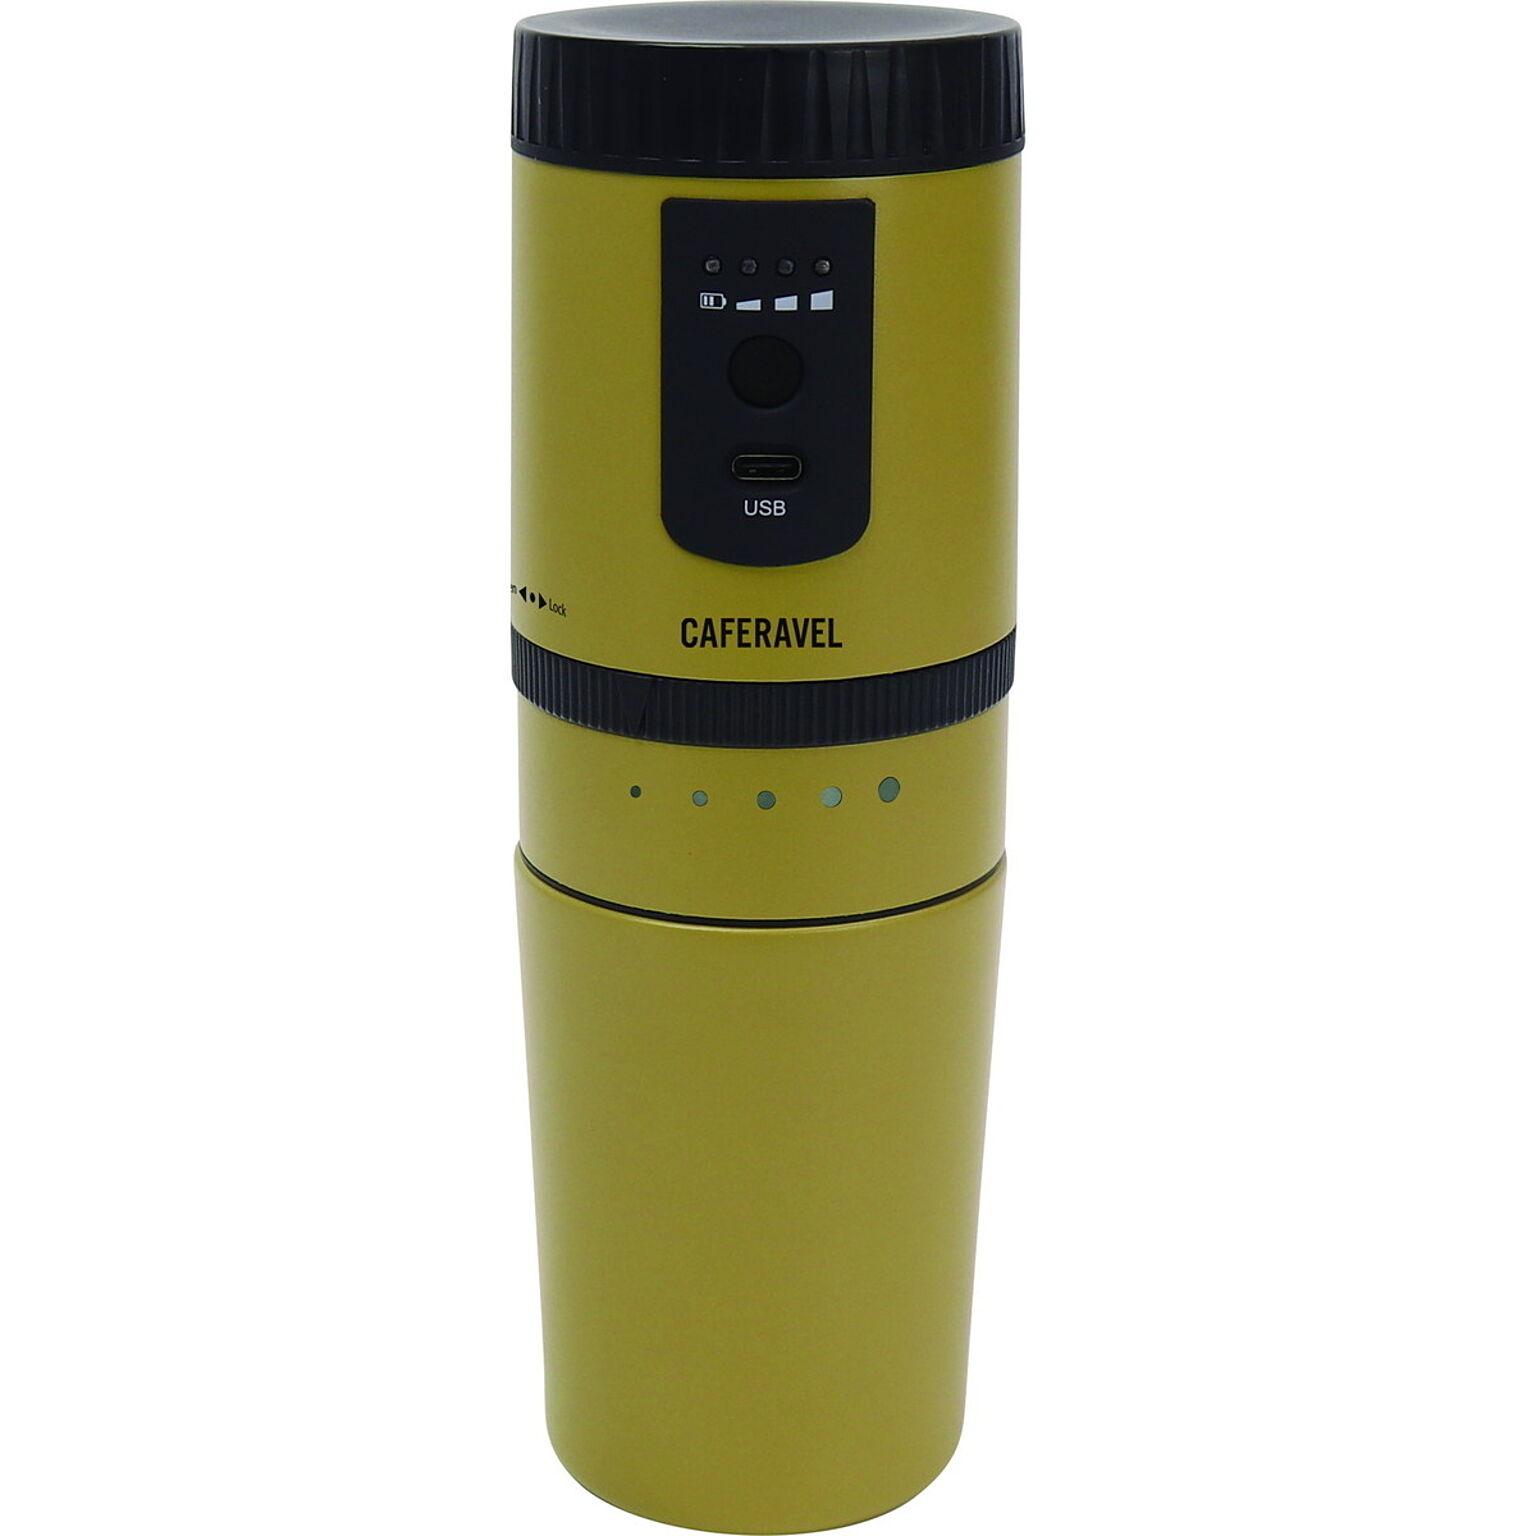 カフェ カフェラベル コーヒーミル コーヒーメーカー 一体型 電動式 USB充電 ダイヤル調節 オールインワン ドリップコーヒー 持ち運び 水筒 マイボトル ステンレス 保温 保冷 アウトドア オフィ